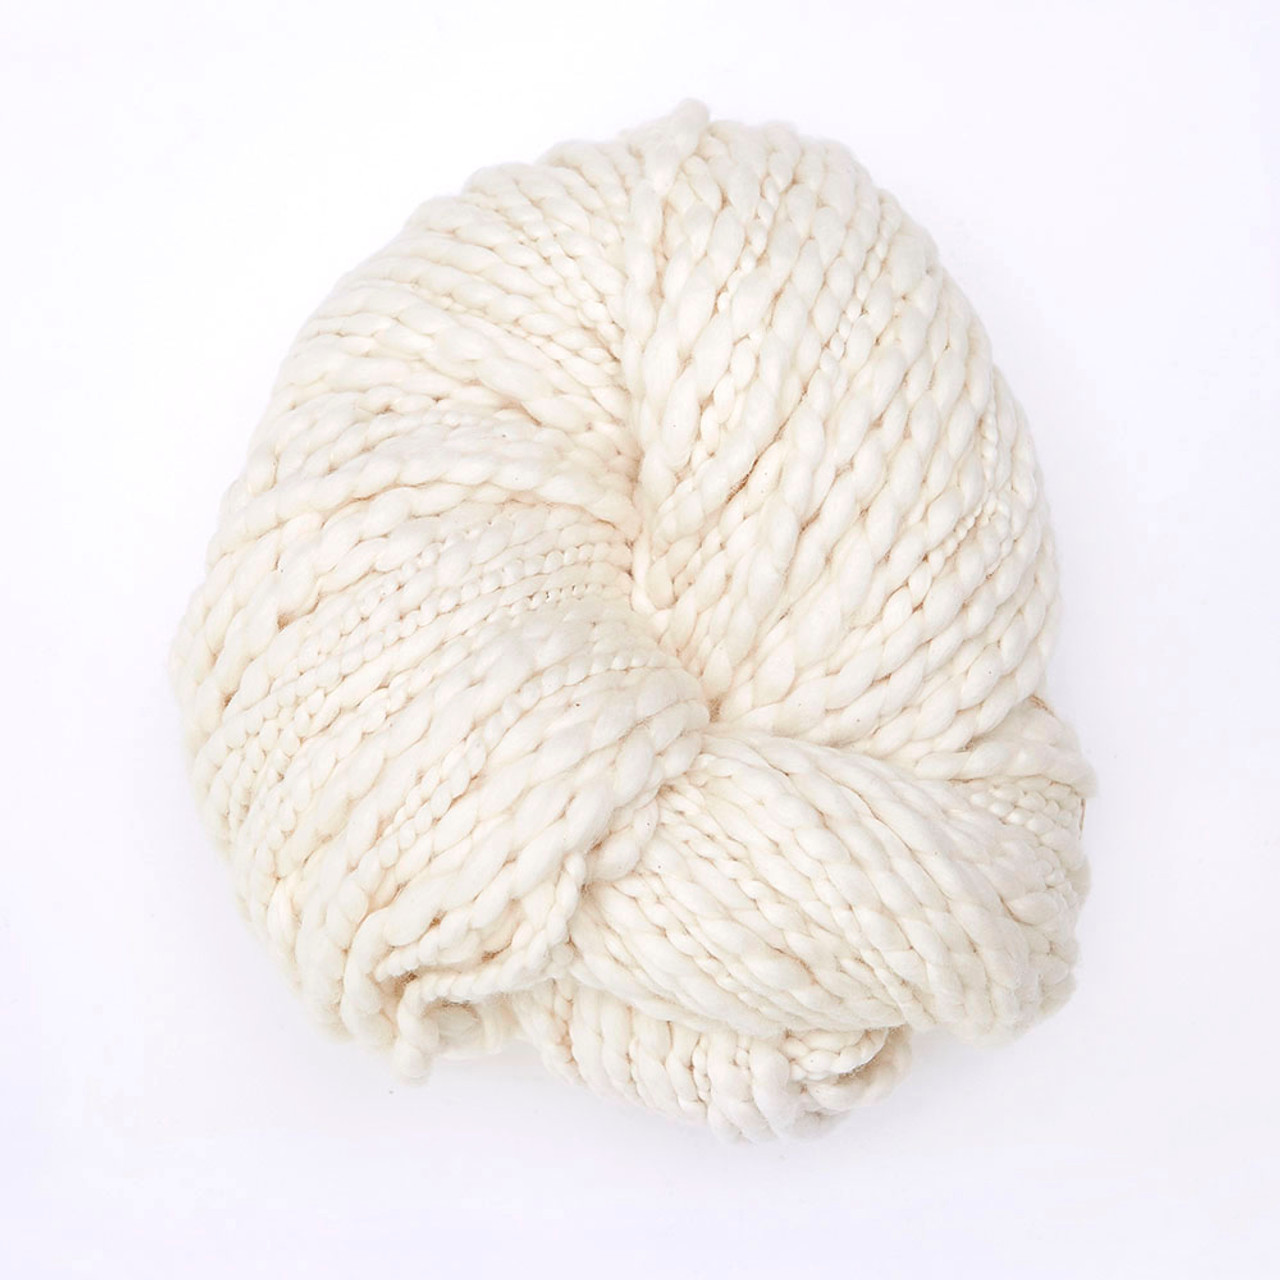 Knitting Cotton Yarn, Organic Cotton Yarn